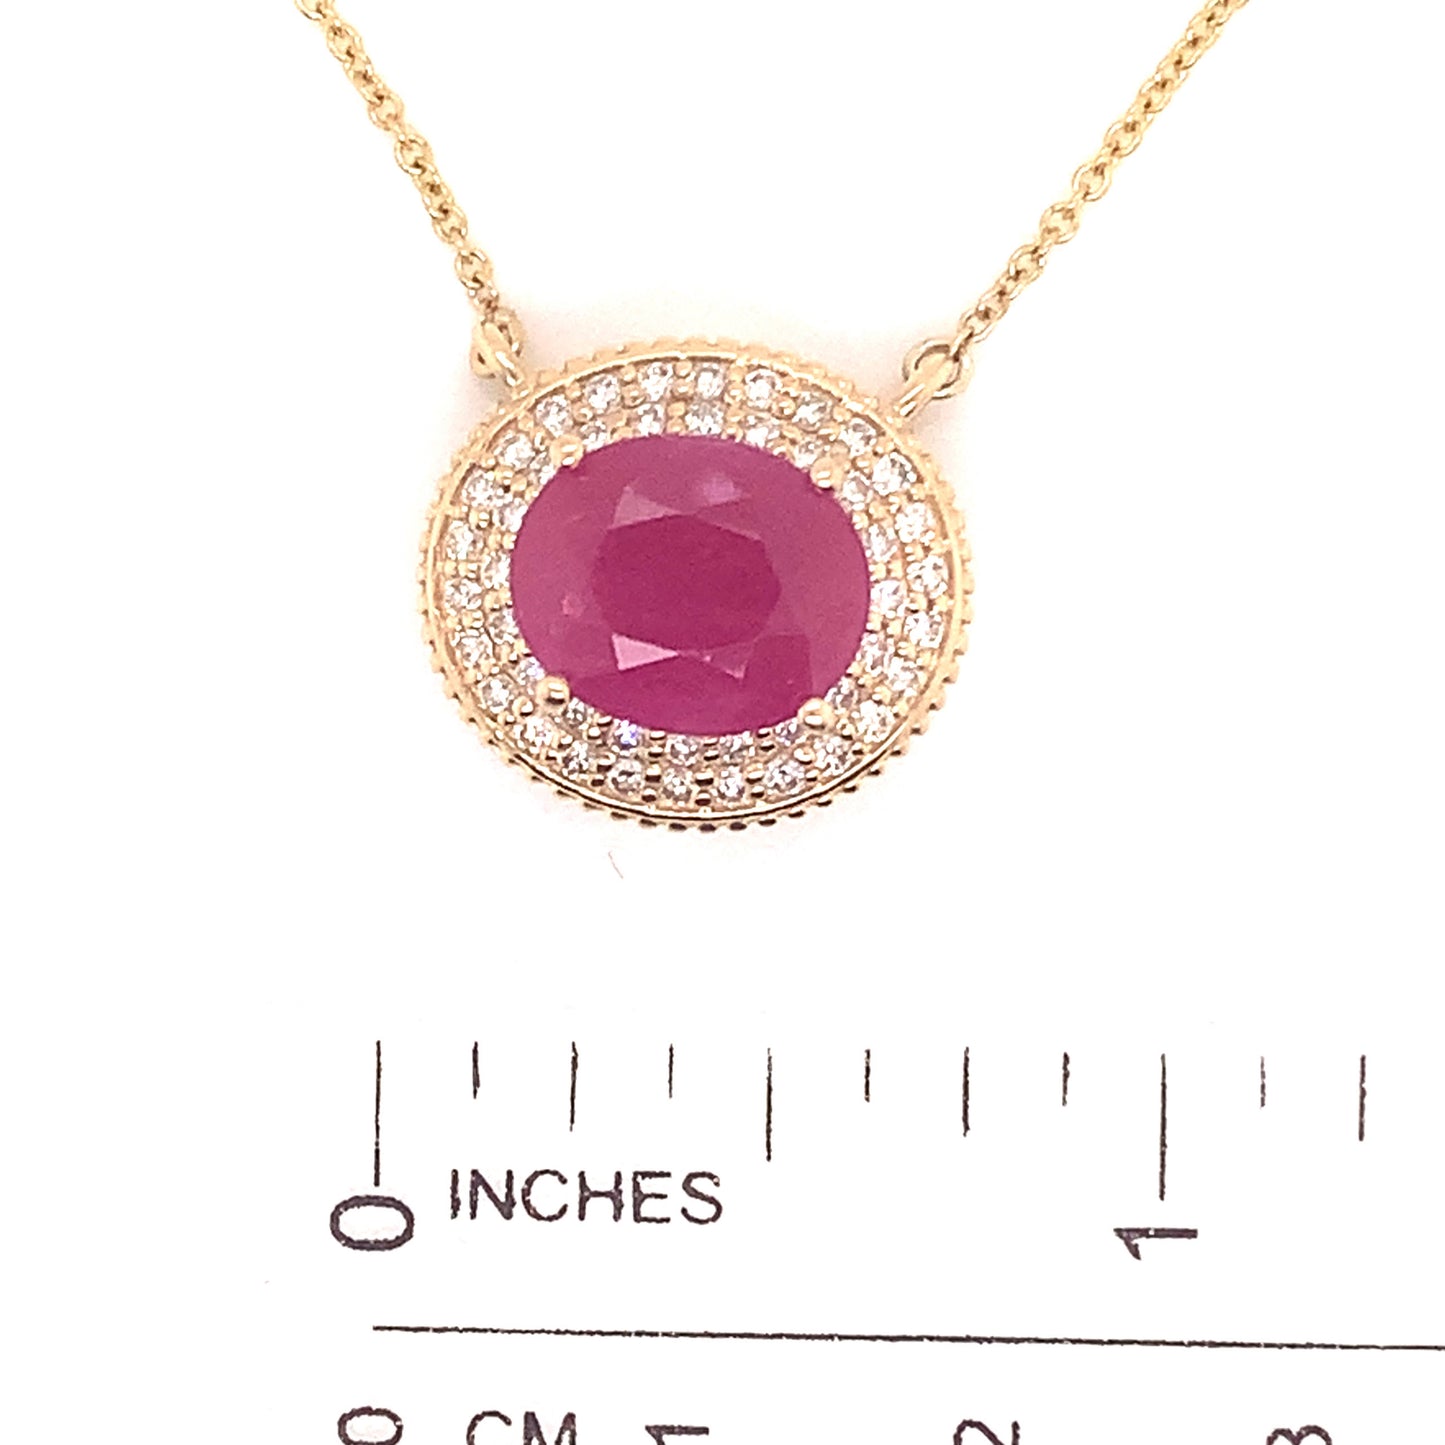 Ruby Diamond Necklace 14k Gold 18" 5.06 TCW Certified $5,975 121097 - Certified Fine Jewelry